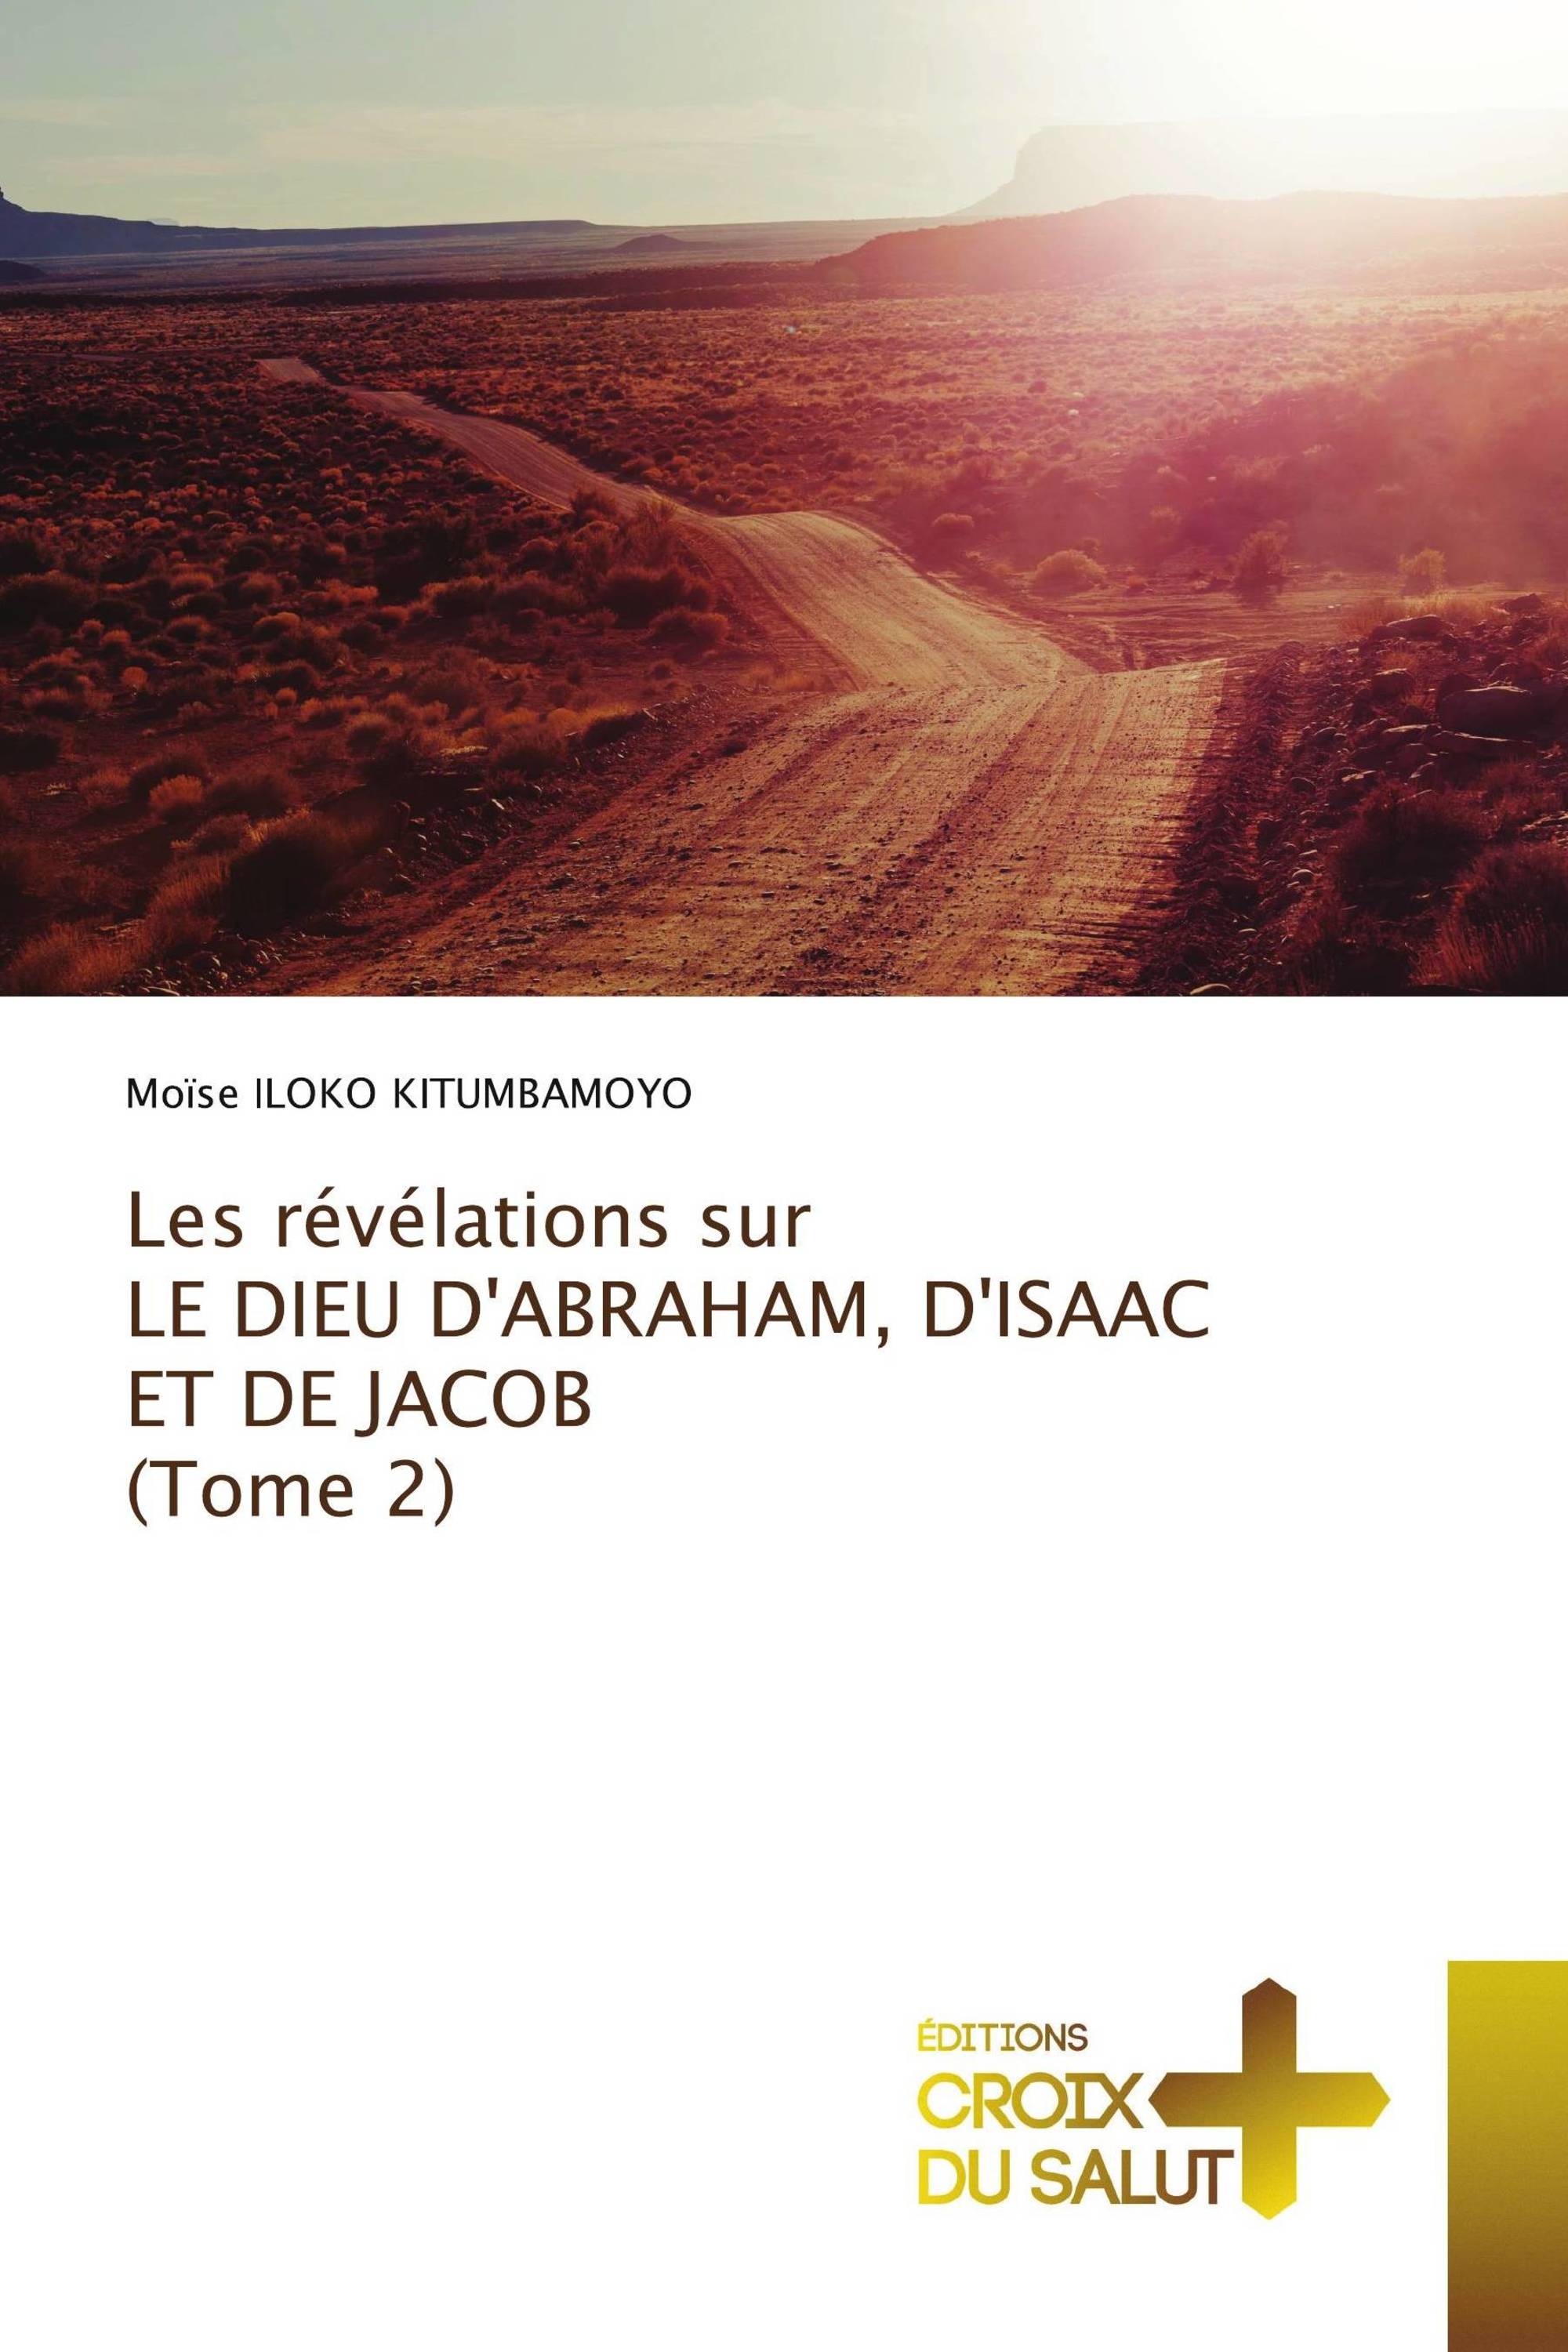 Les révélations sur LE DIEU D'ABRAHAM, D'ISAAC ET DE JACOB (Tome 2)